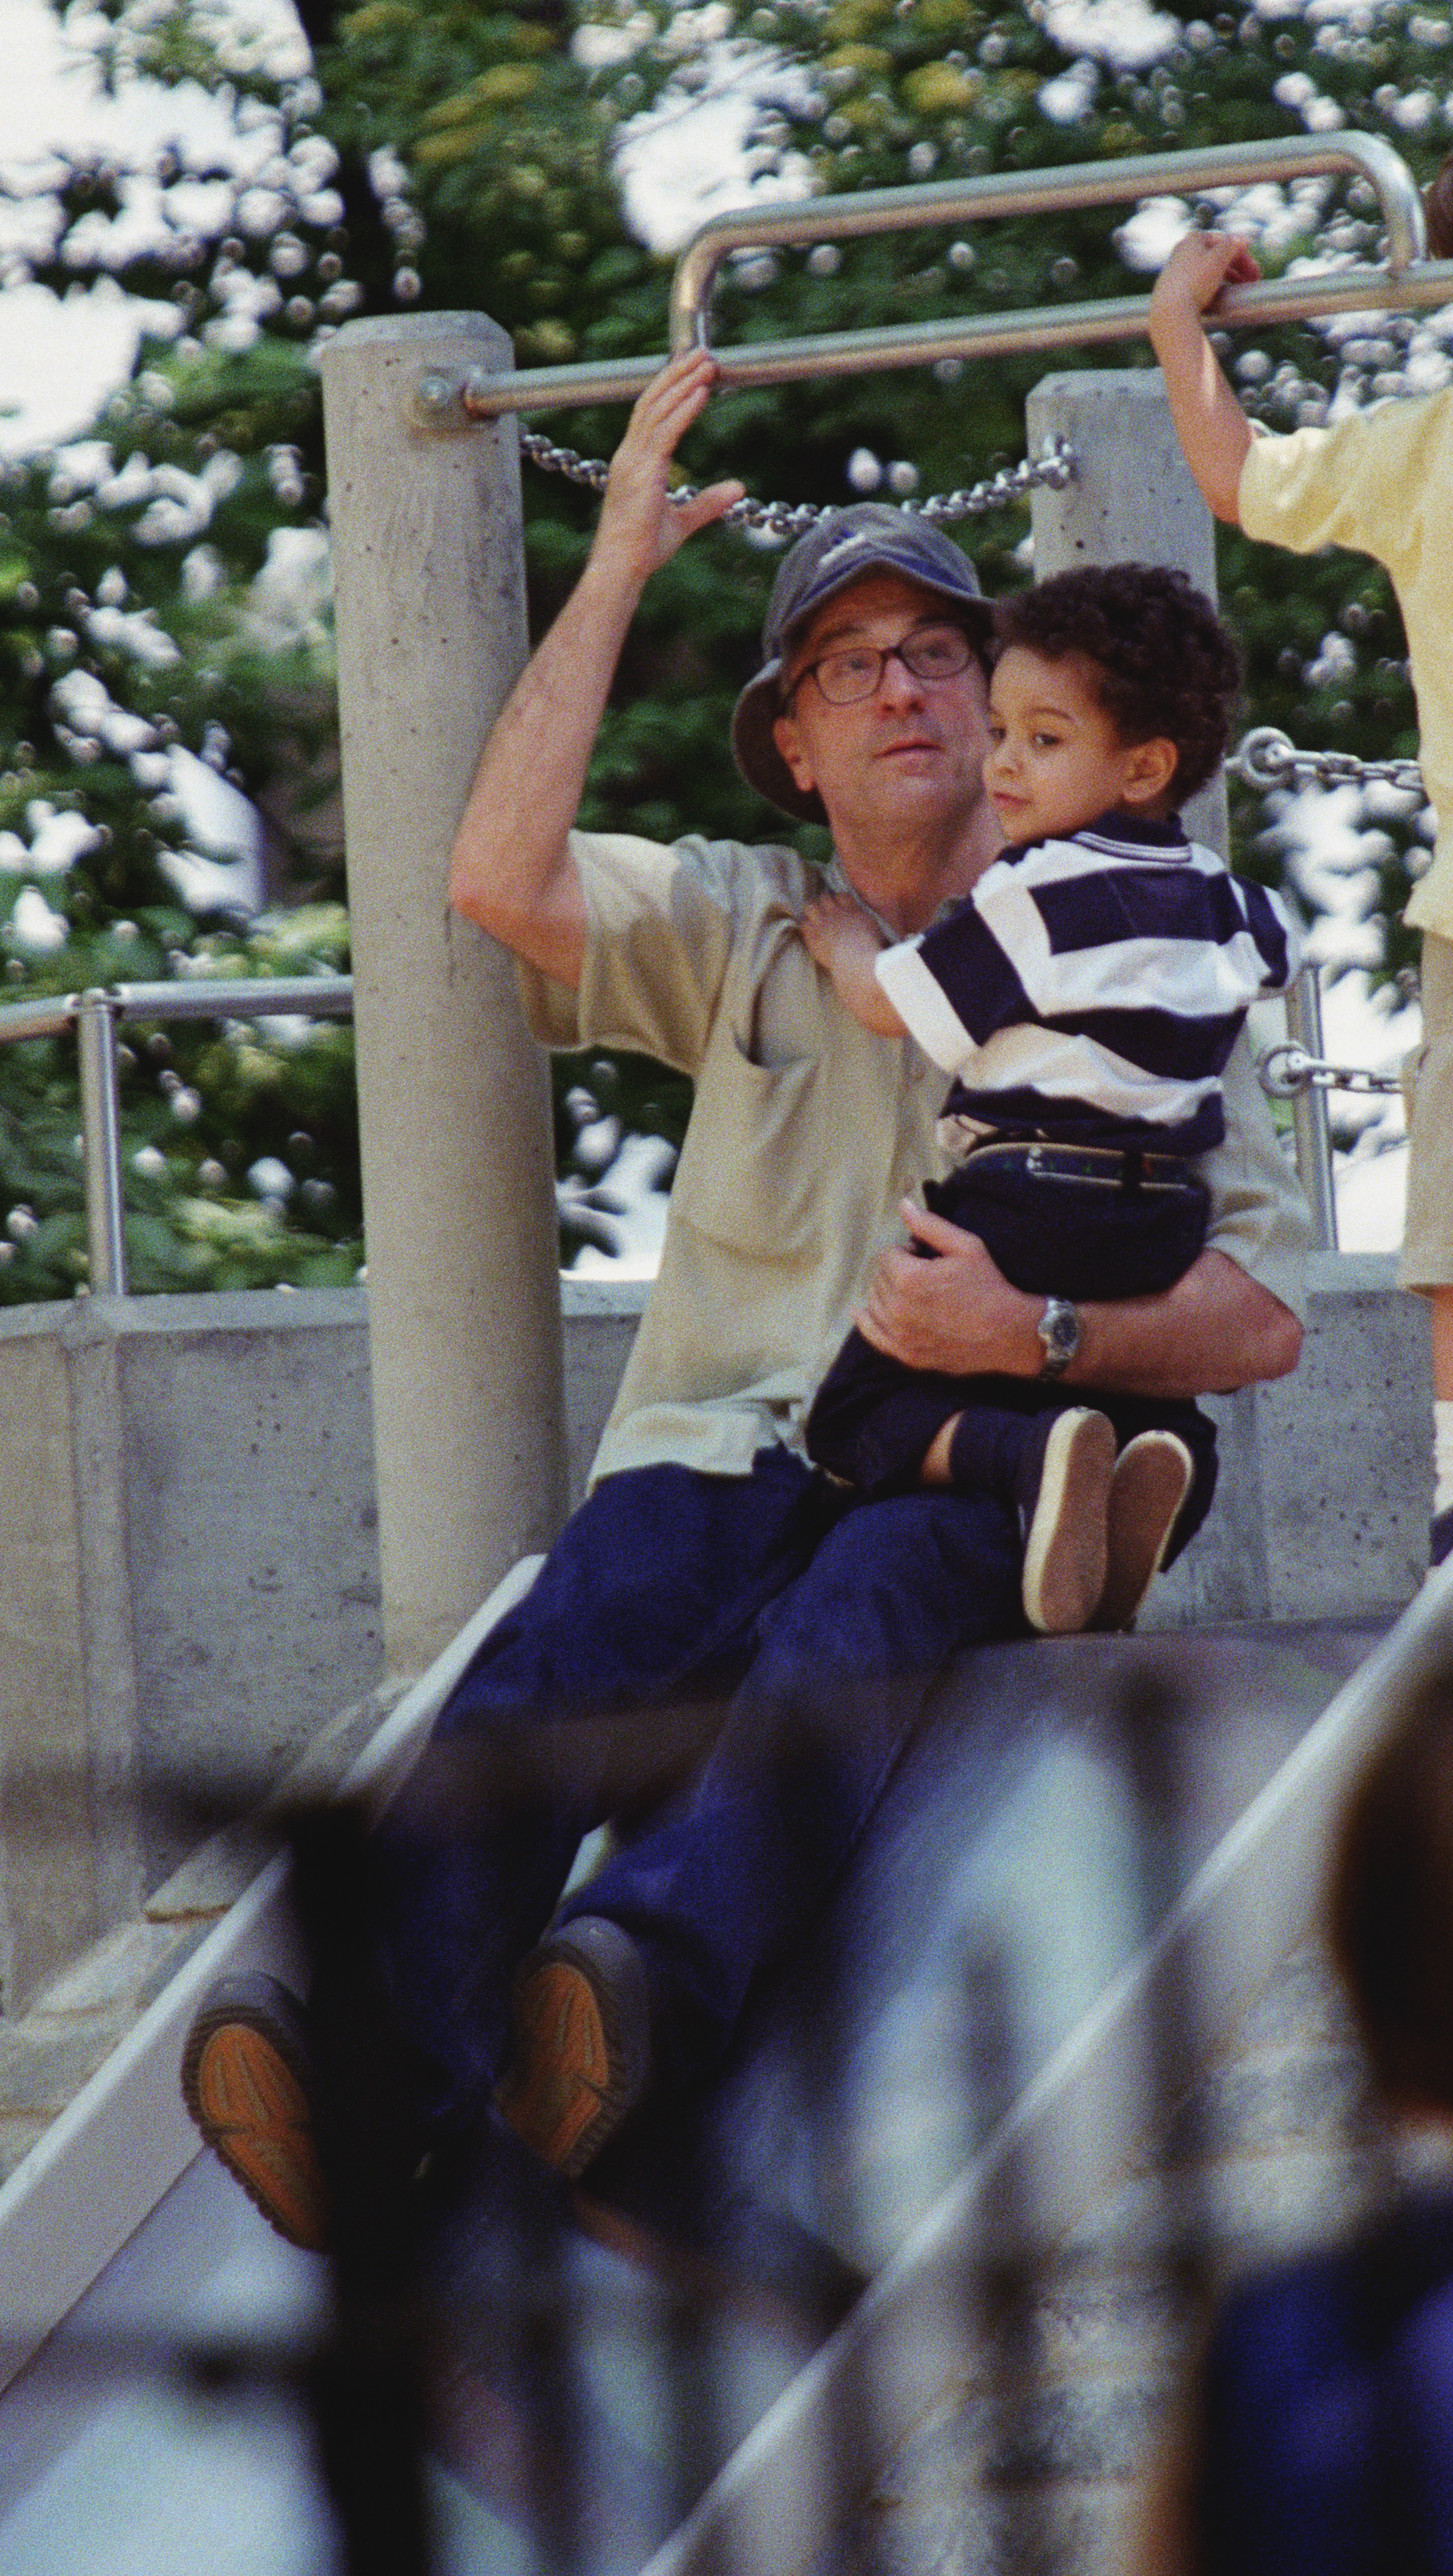 Robert De Niro et son fils, Elliot, sur l'étang de Sliding Pond à Central Park en 2001 | Source : Getty Images